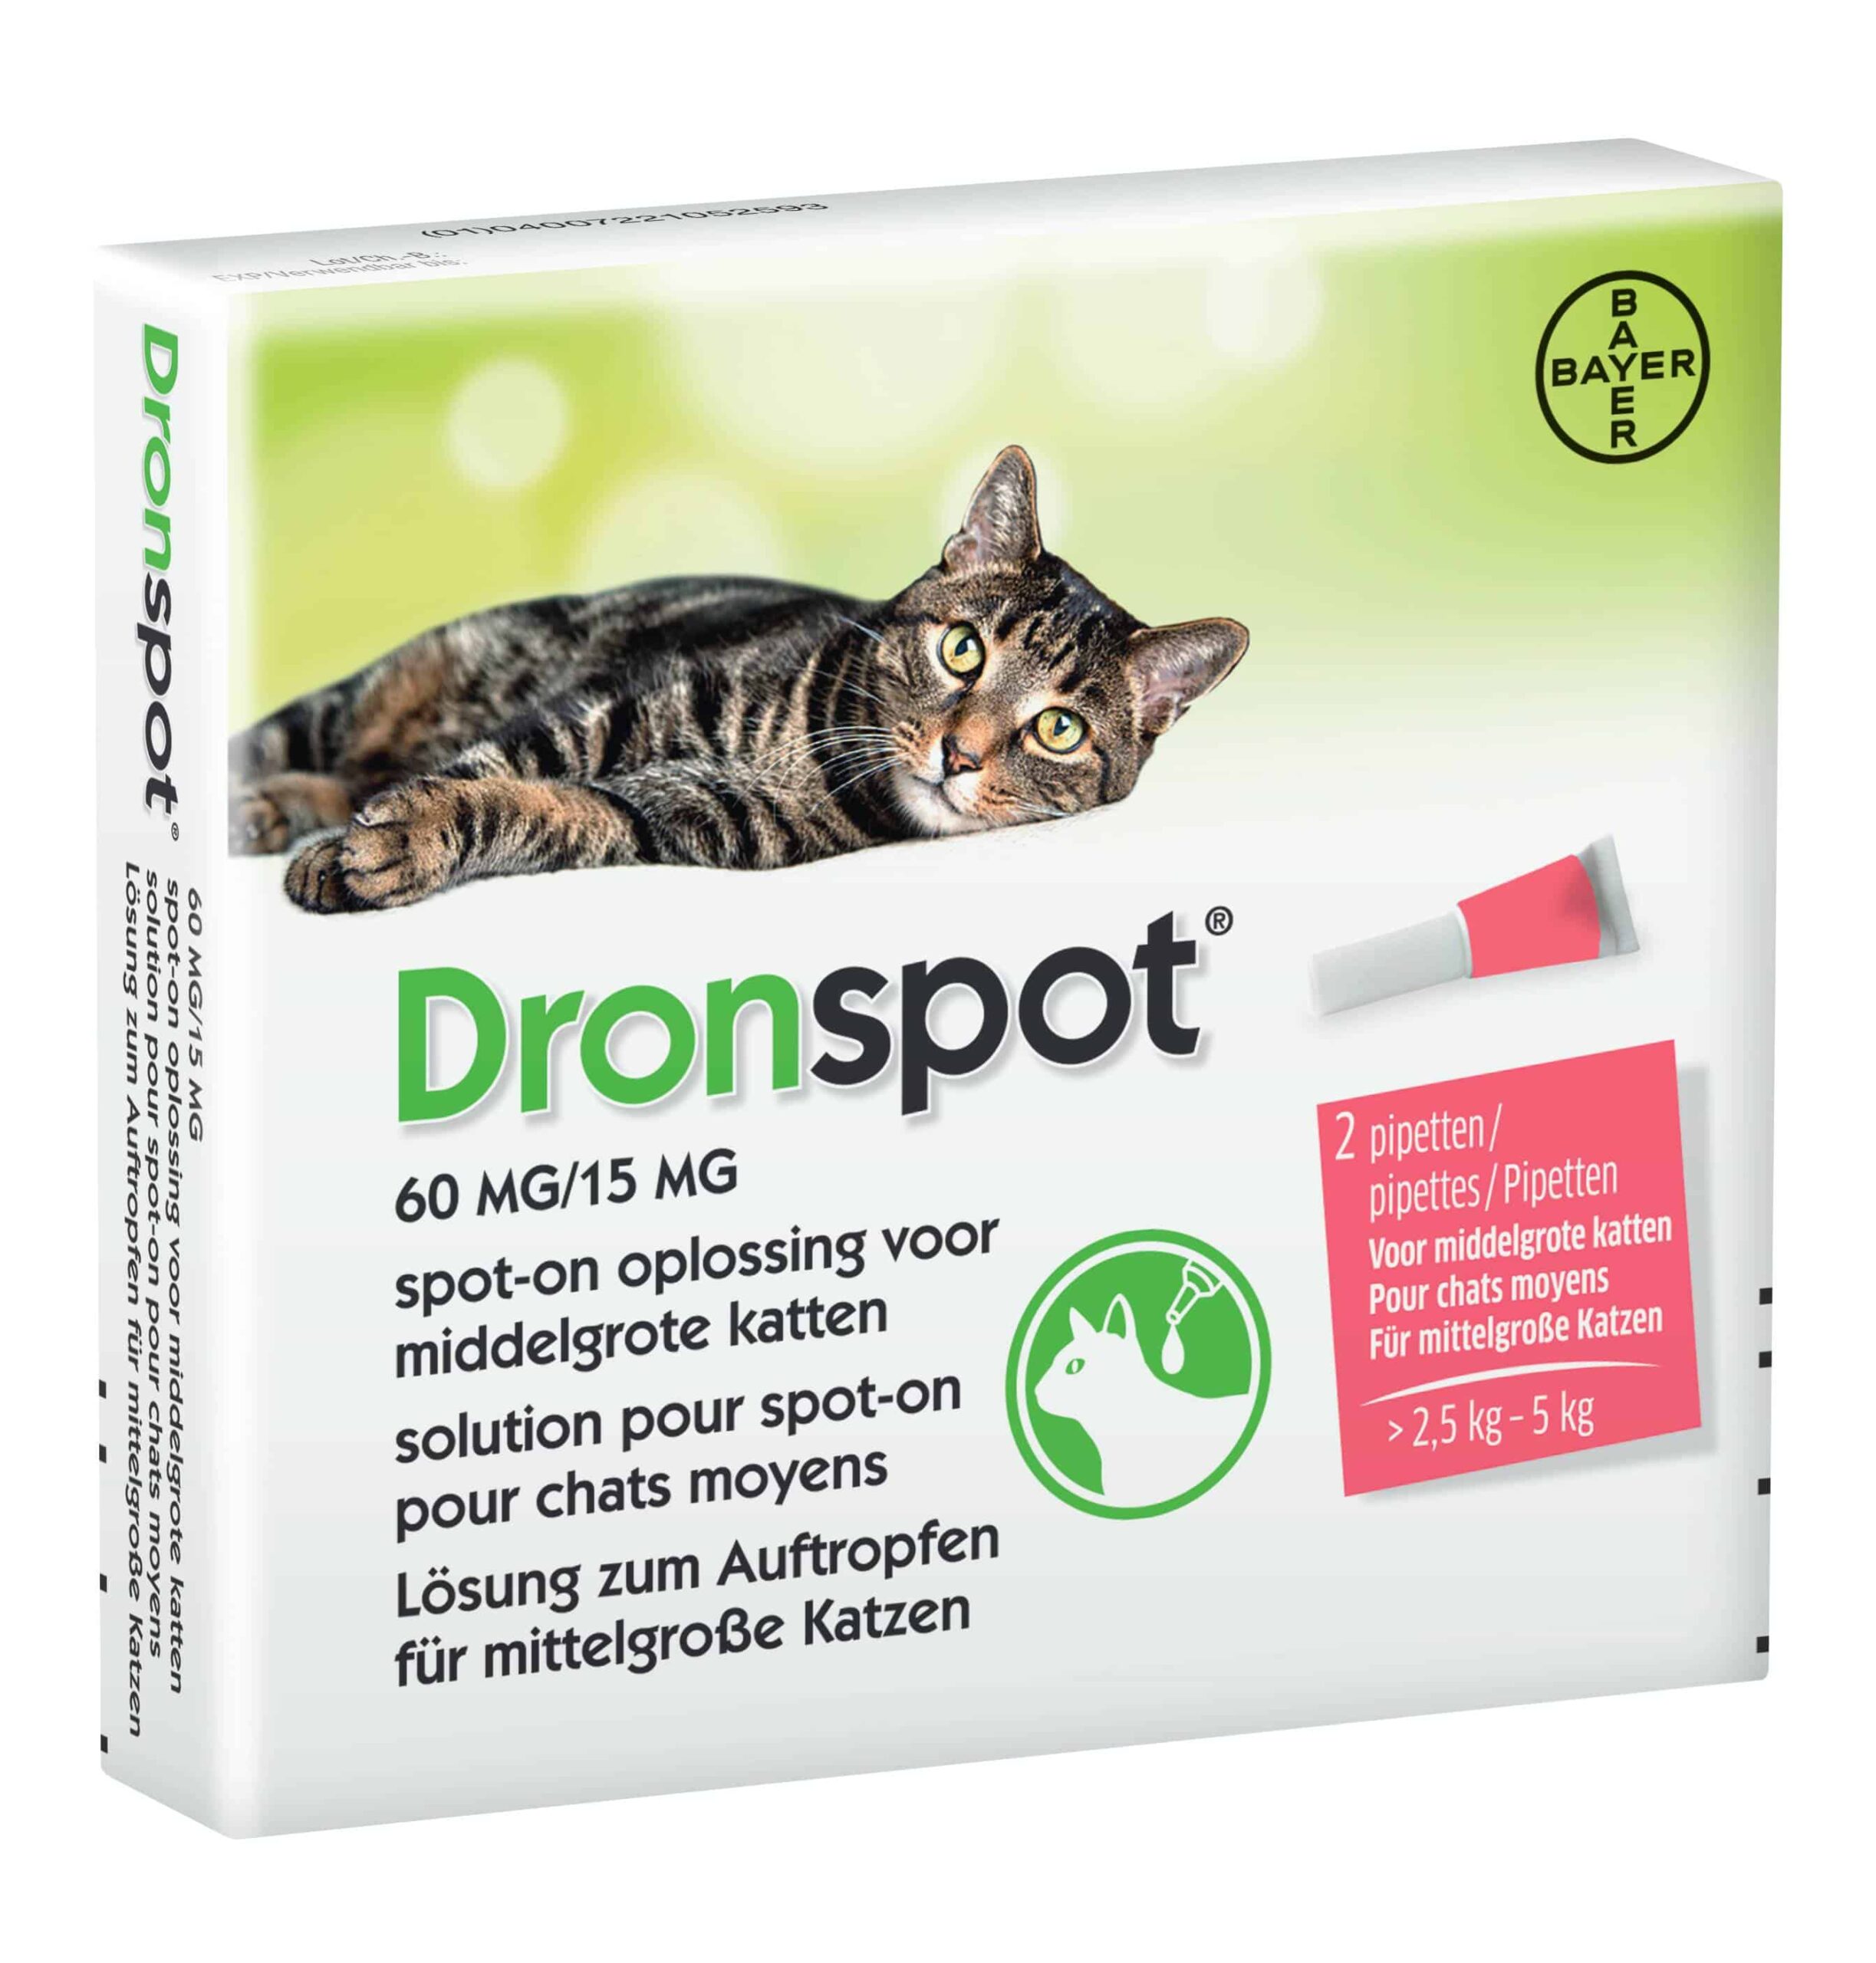 Socialisme daarna Besparing Dronspot katten ontworming 2 pipetten voor in de nek. | BeestachtigGoed